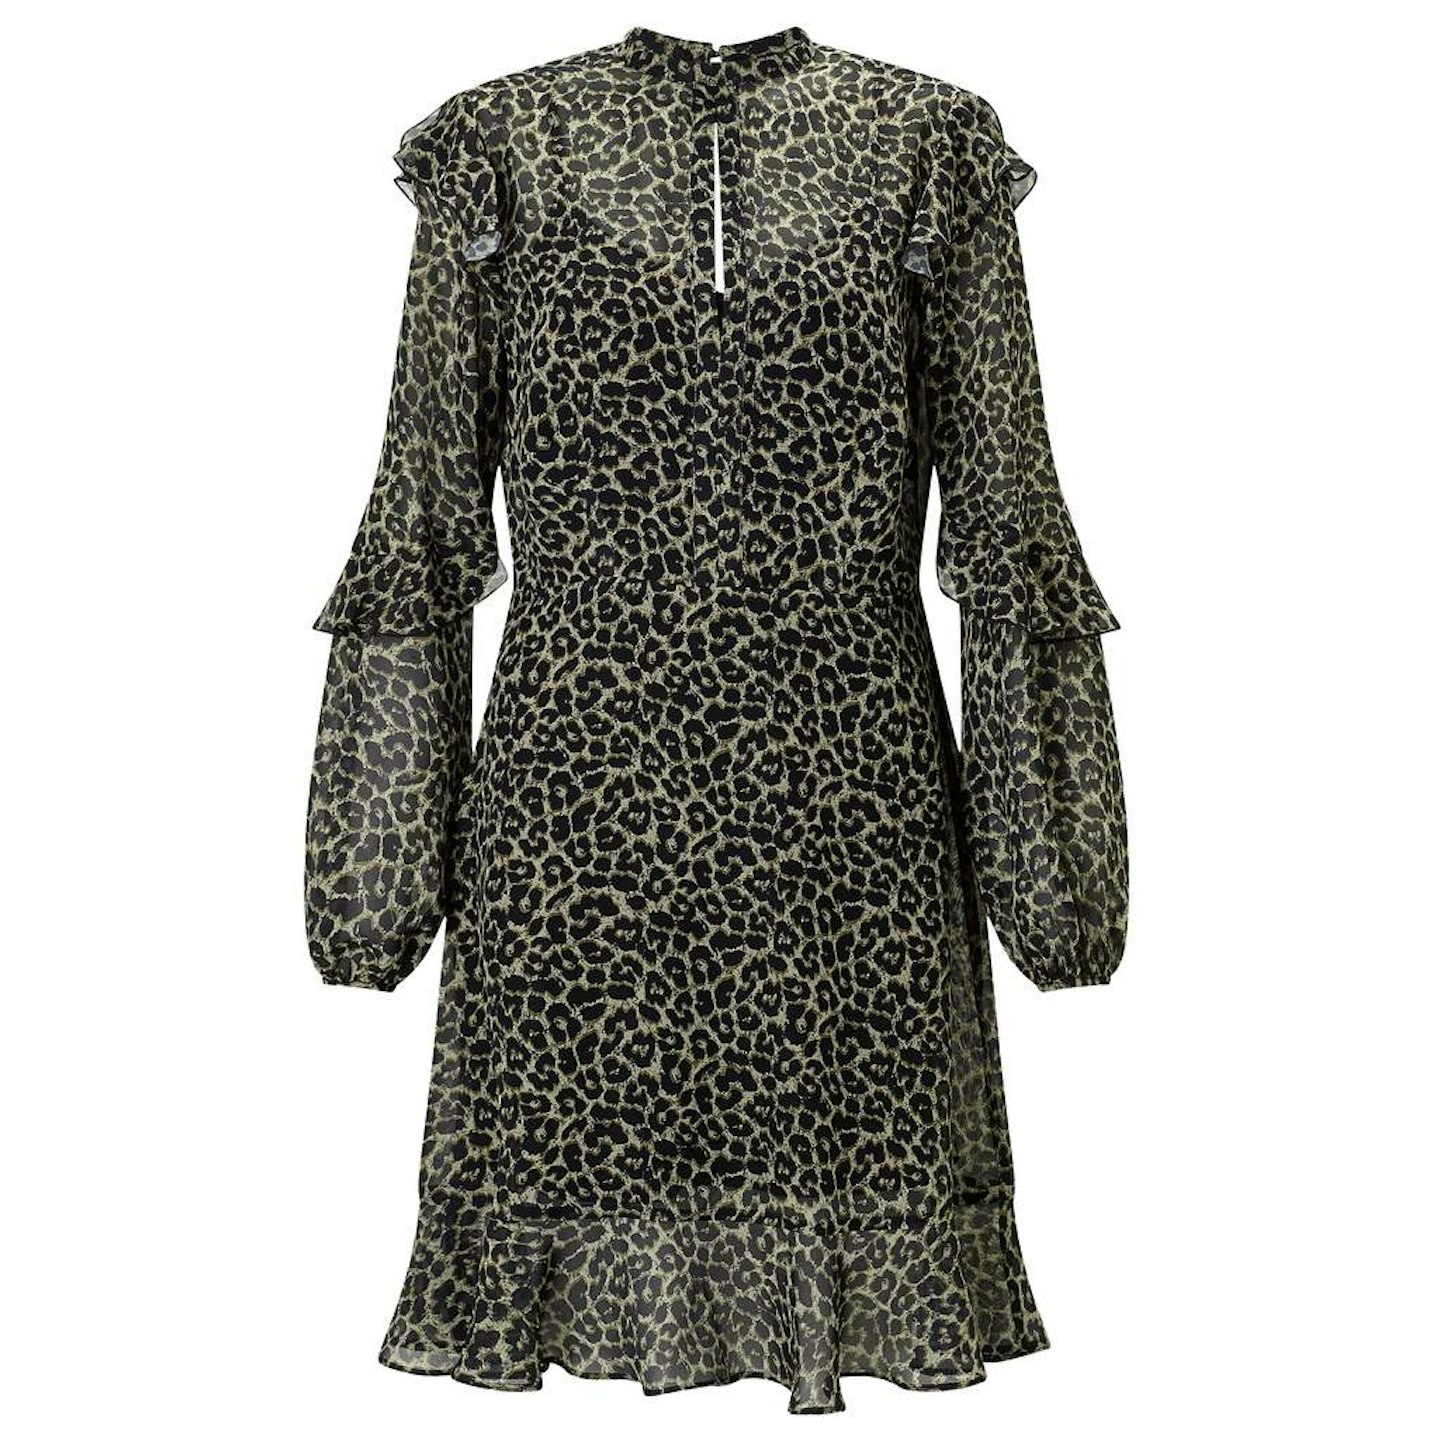 leopard-print-ruffle-dress